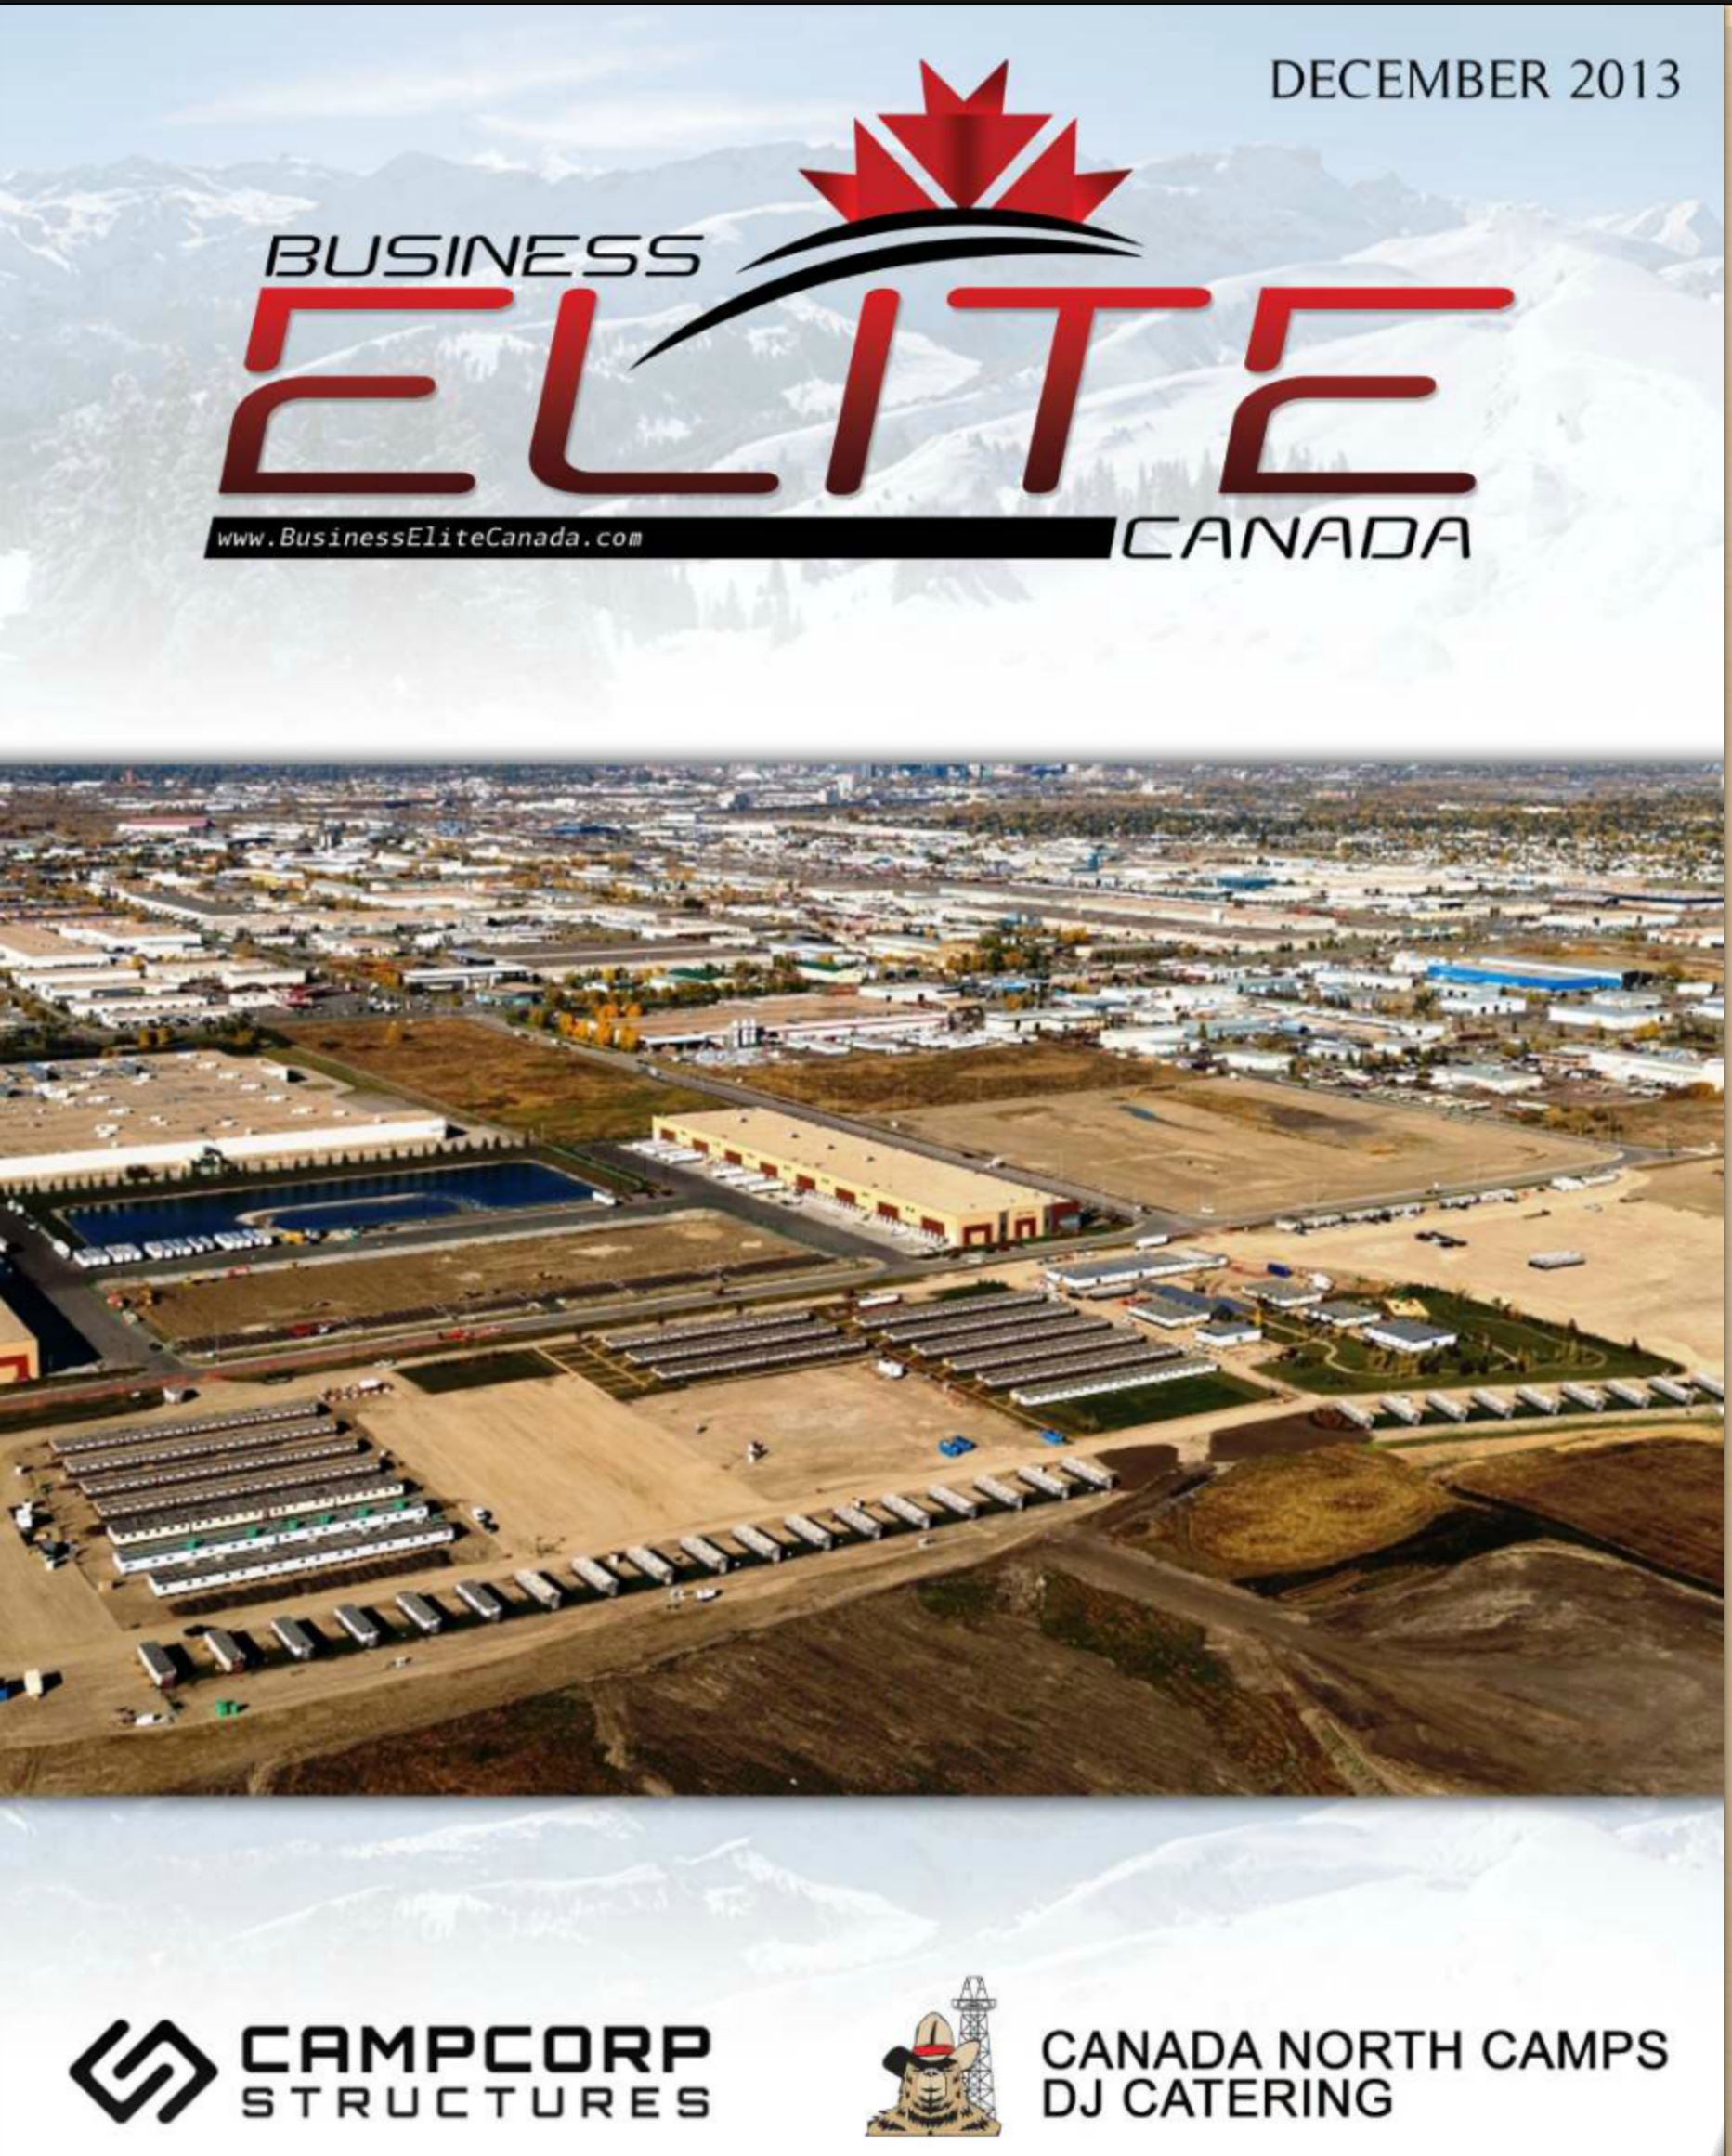 Business Elite Canada Dec 2013 Issue featuring AGNORA